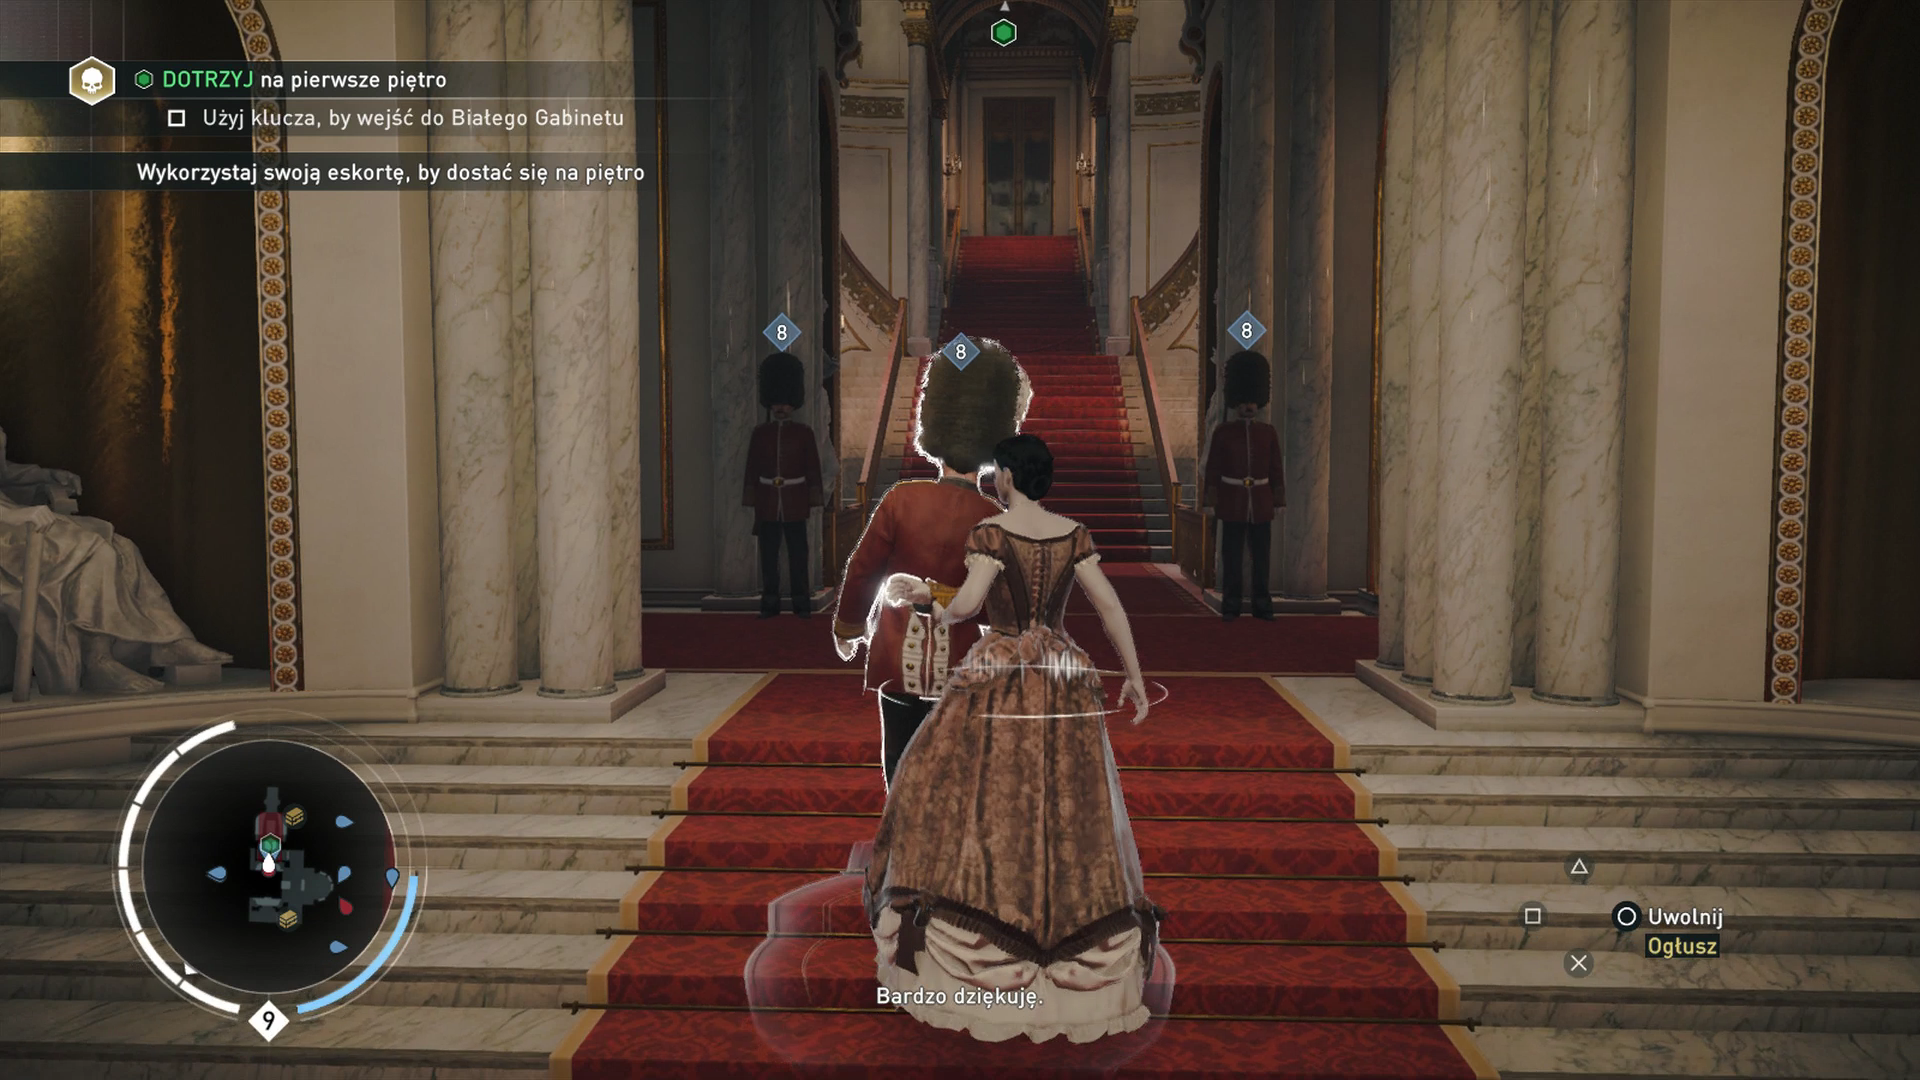 Obrazki dla Assassin's Creed Syndicate - Sekwencja 9: Podwójny kłopot, Strój wieczorowy, Polityka rodzinna, Pamiętna noc